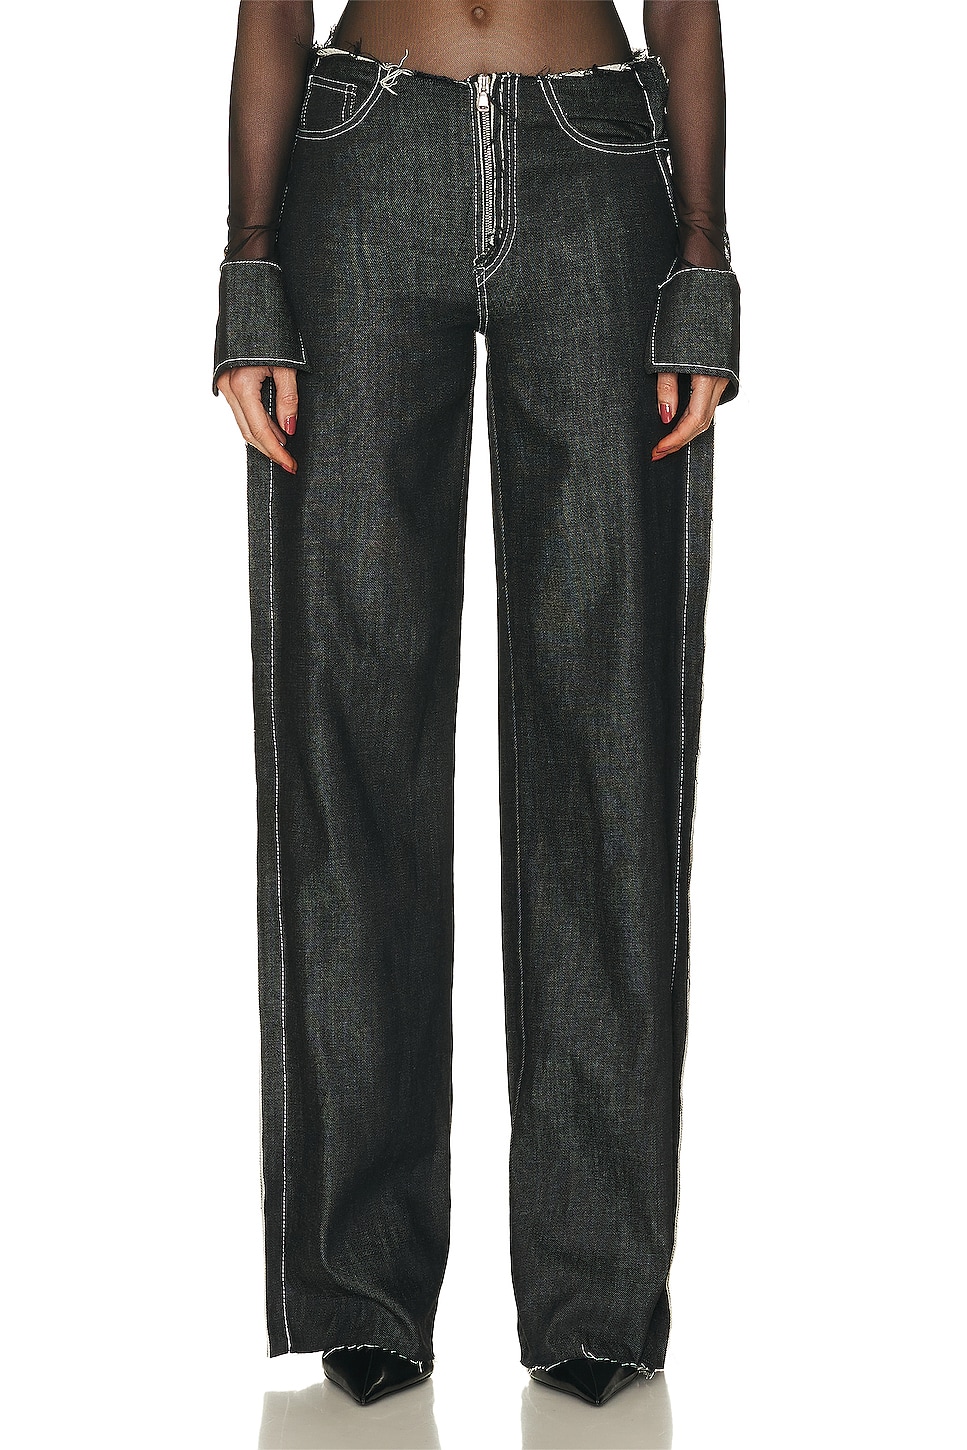 Image 1 of SAMI MIRO VINTAGE for FWRD Undone Waist Trouser in Denim